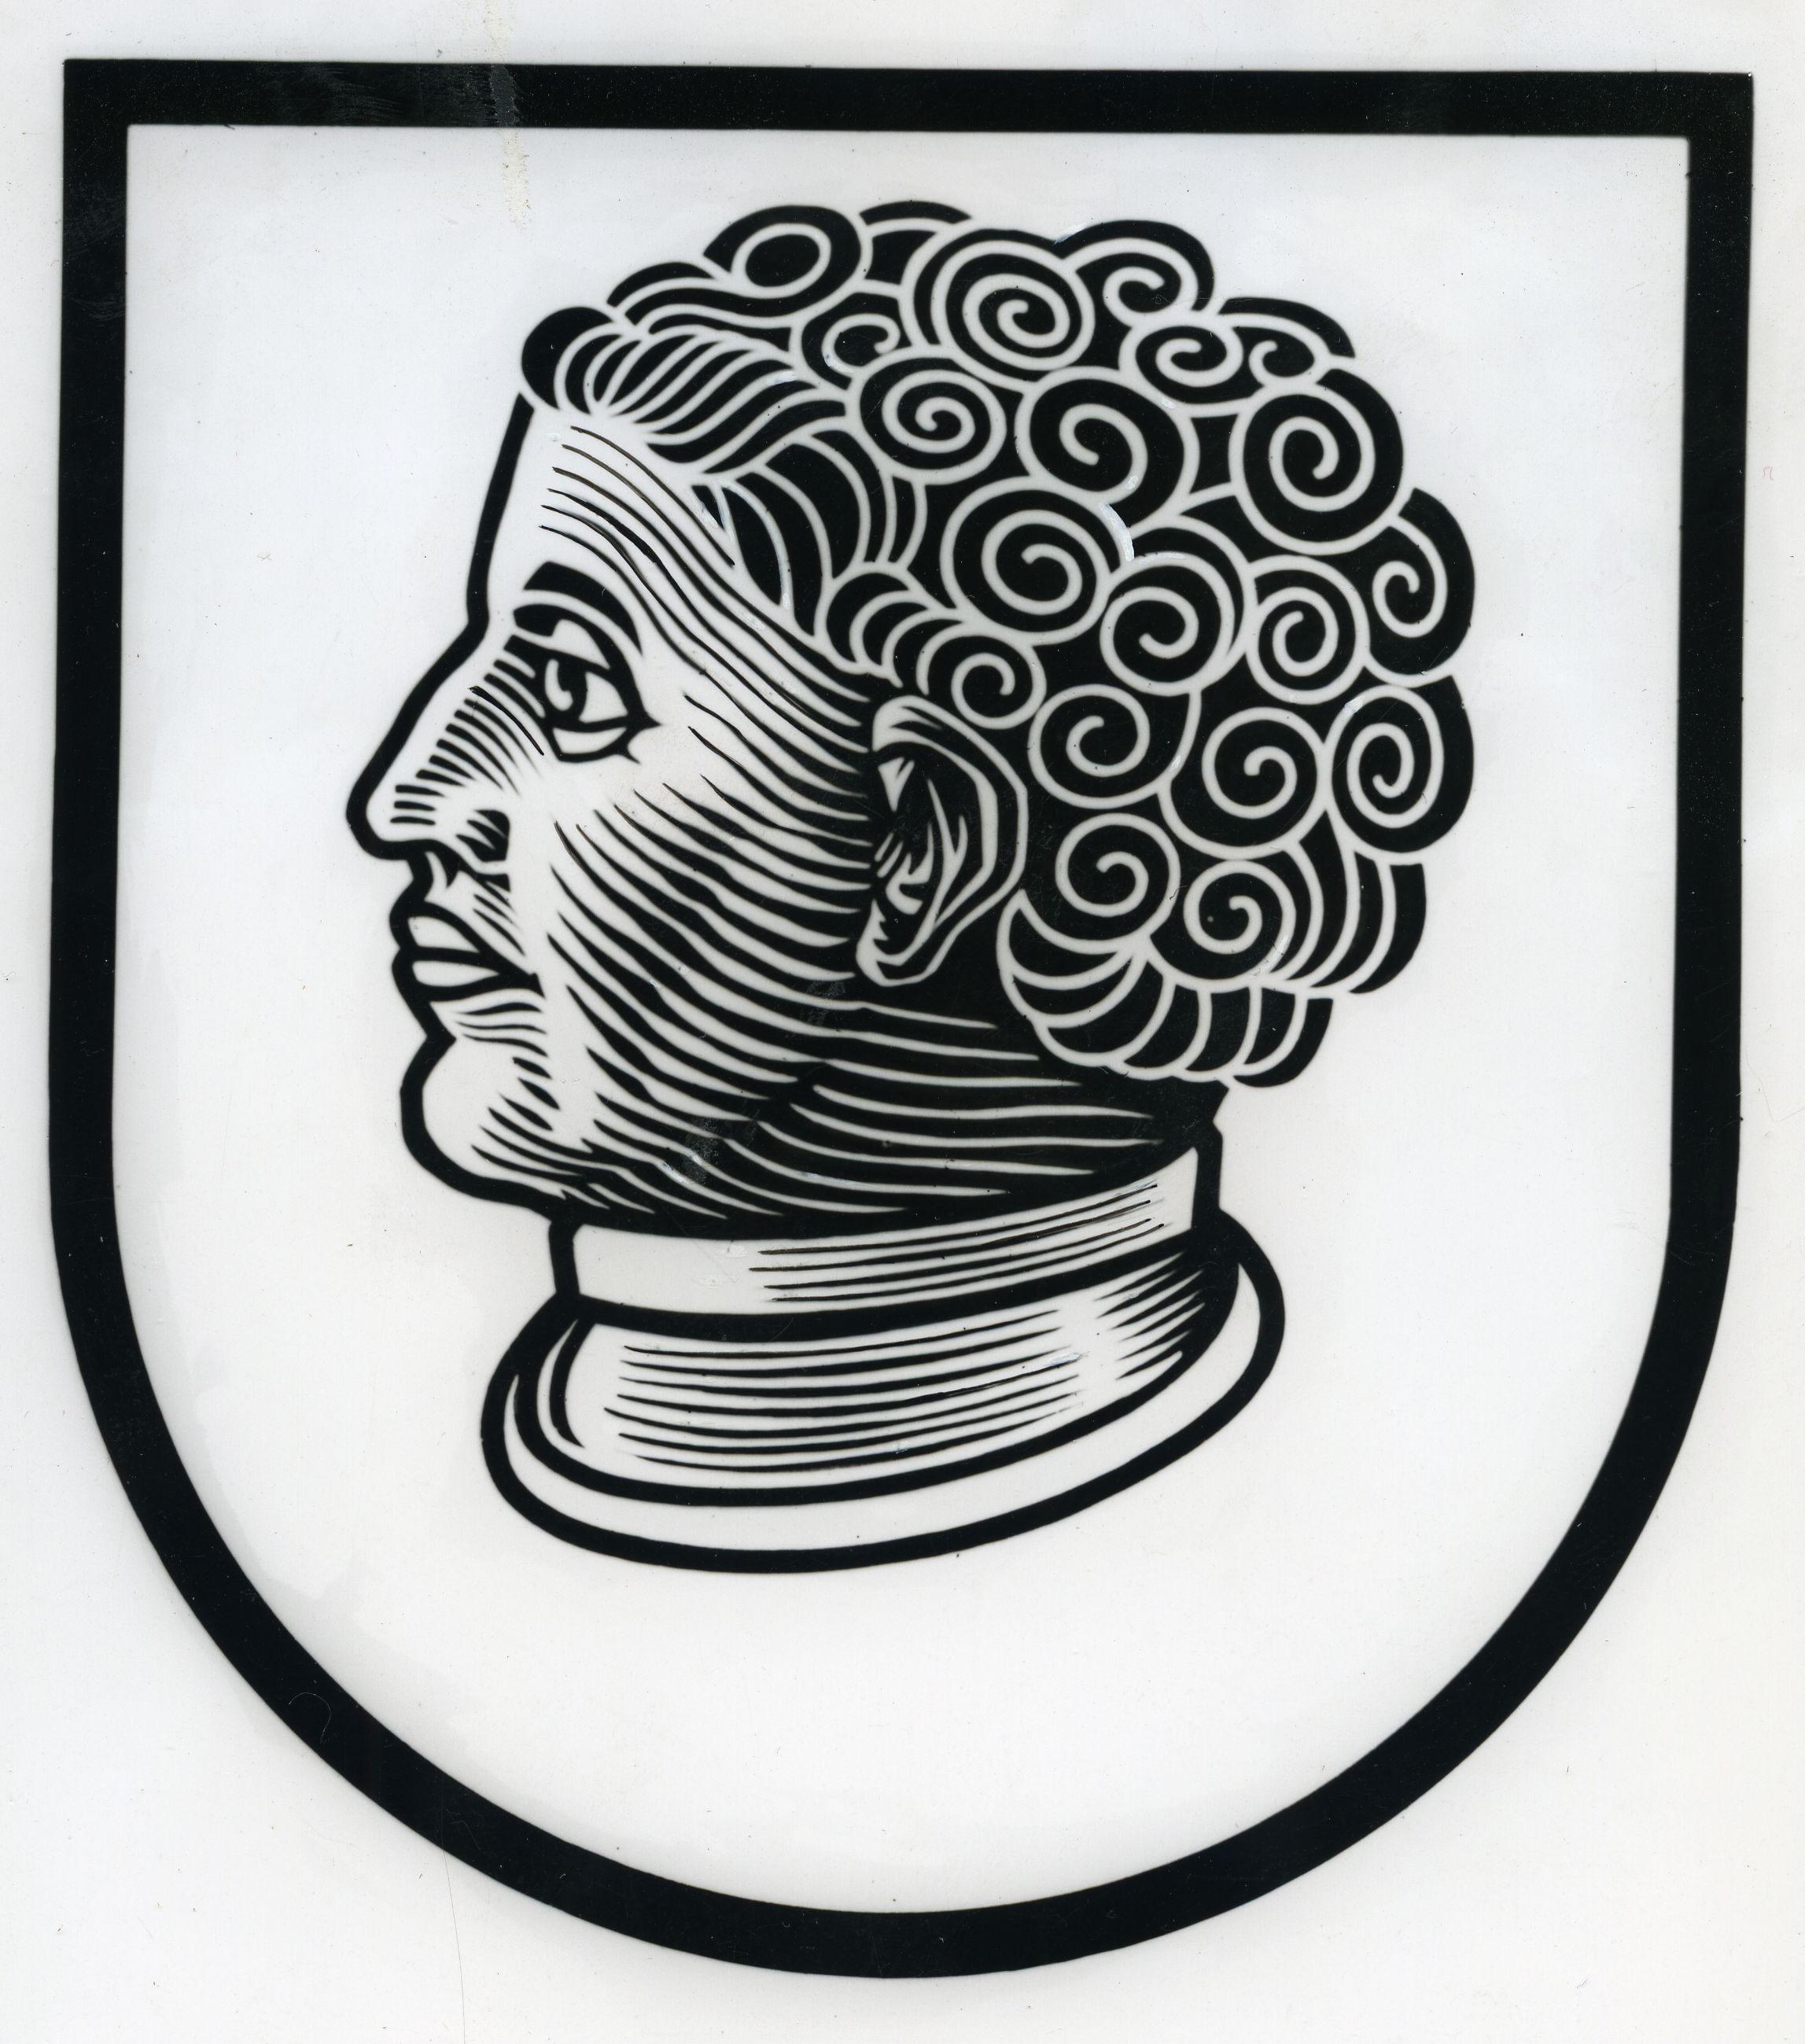 Coburg crest 1953